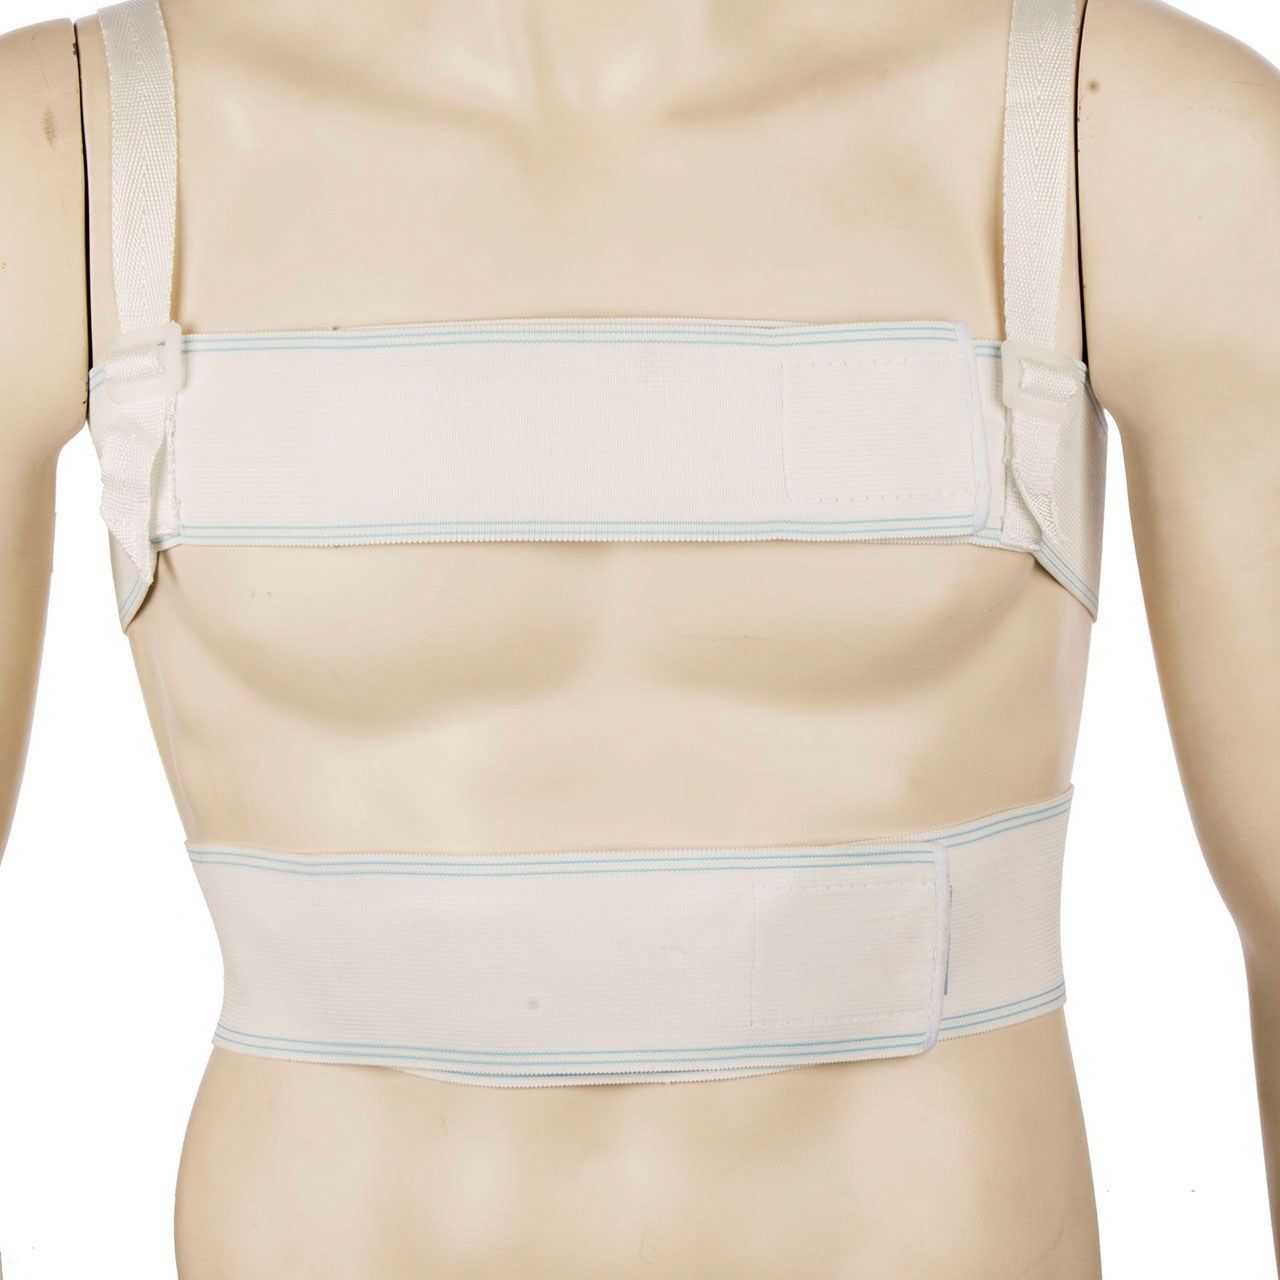 حمایت کننده قفسه سینه پاک سمن مدل Post Sternotomy سایز متوسط -  - 1